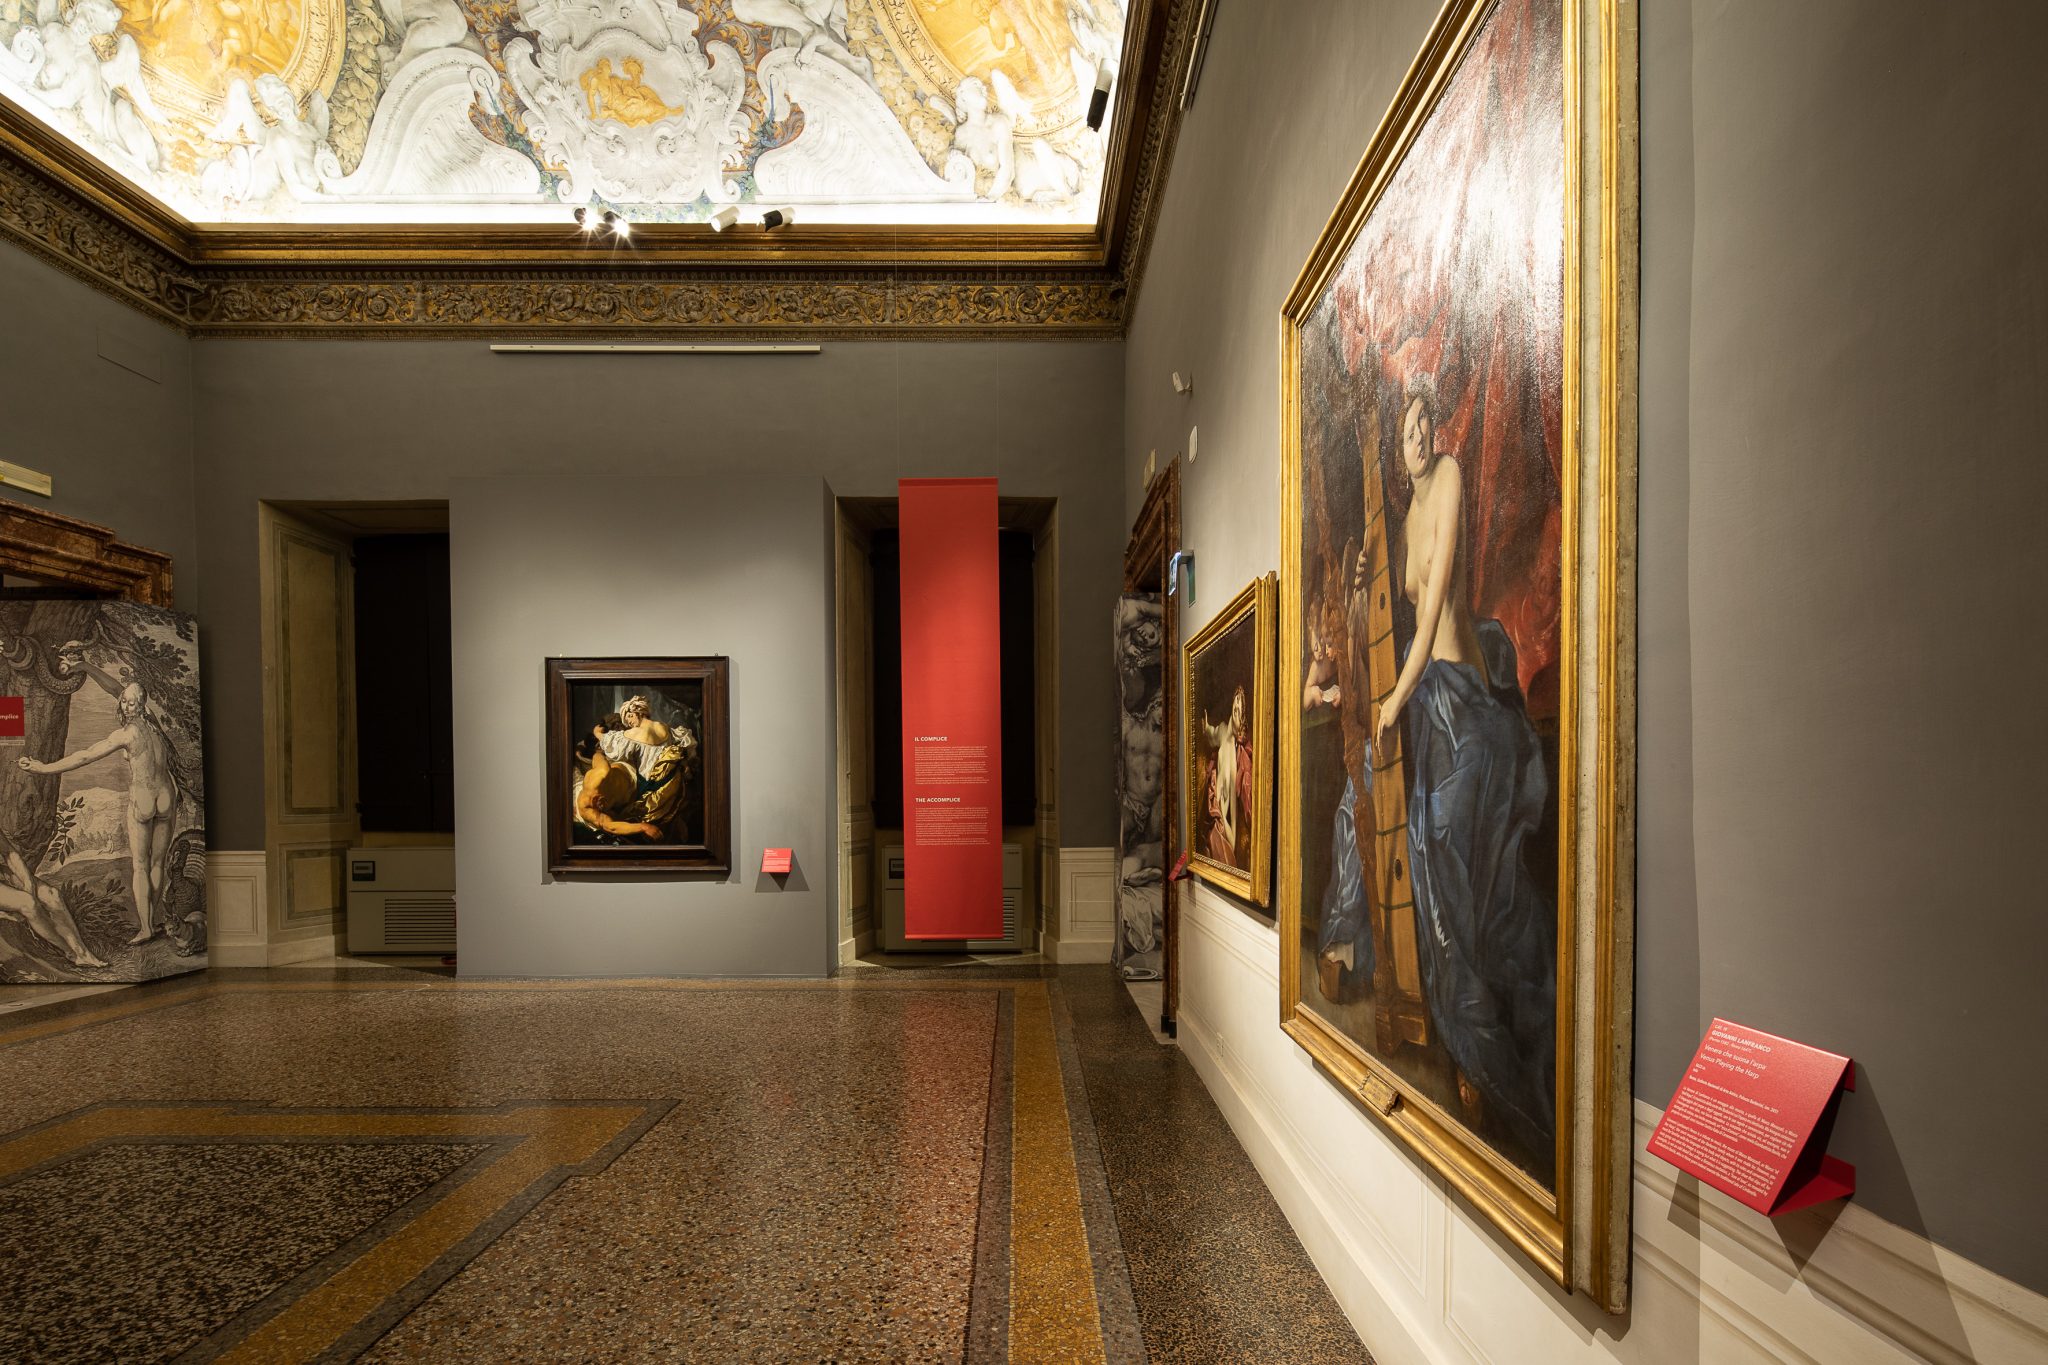 Lunedì 1° febbraio 2021 ha riaperto Palazzo Barberini, sede delle Gallerie Nazionali di Arte Antica